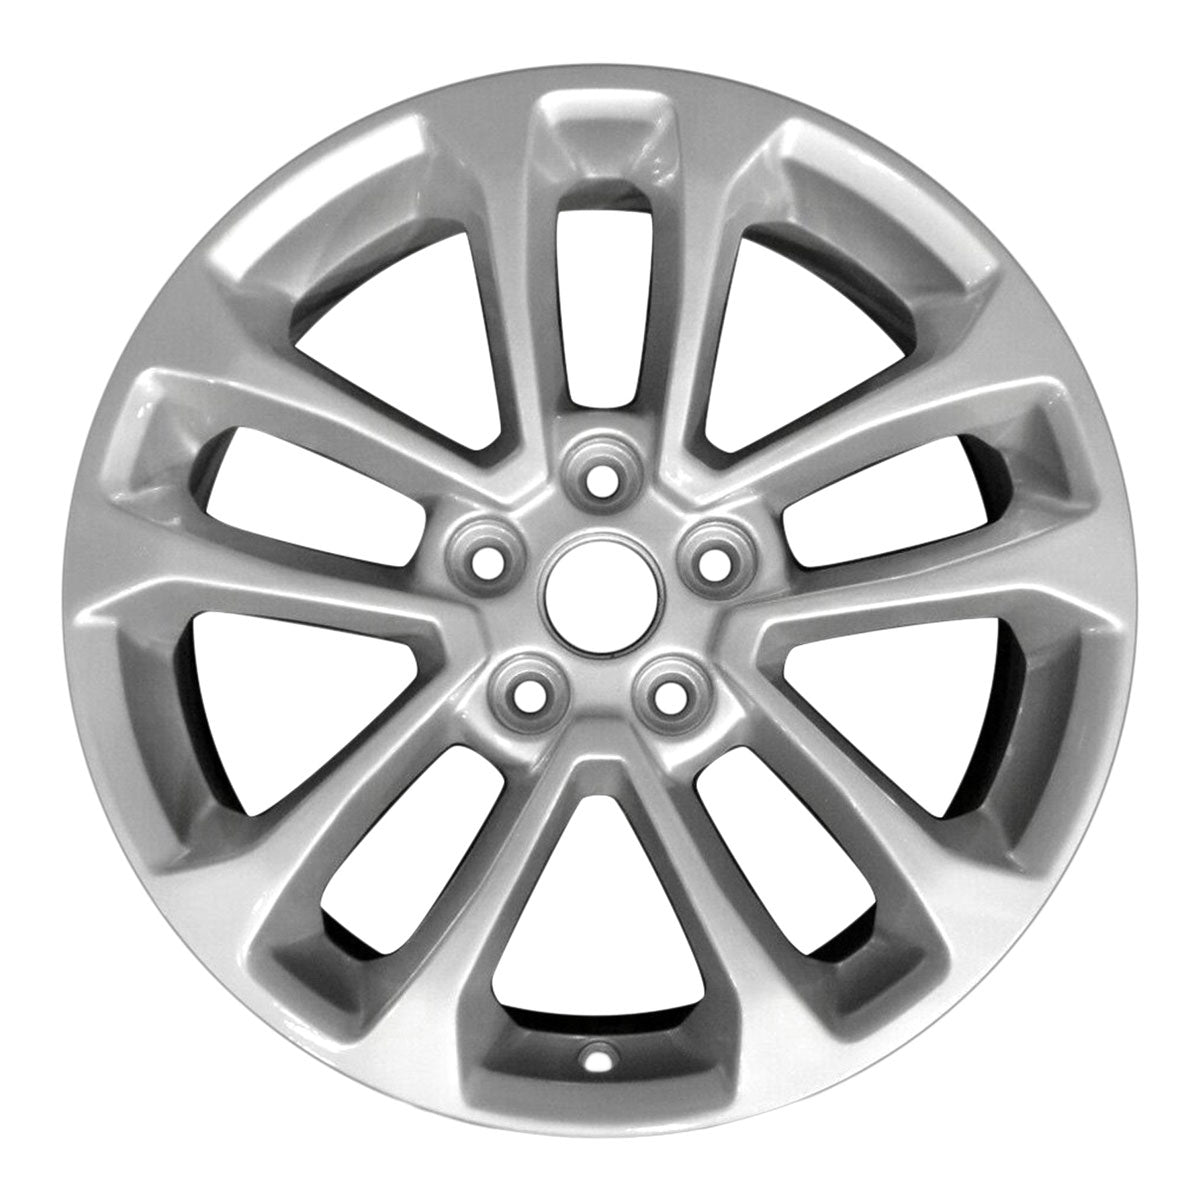 2022 Ford Escape New 17" Replacement Wheel Rim RW10256S